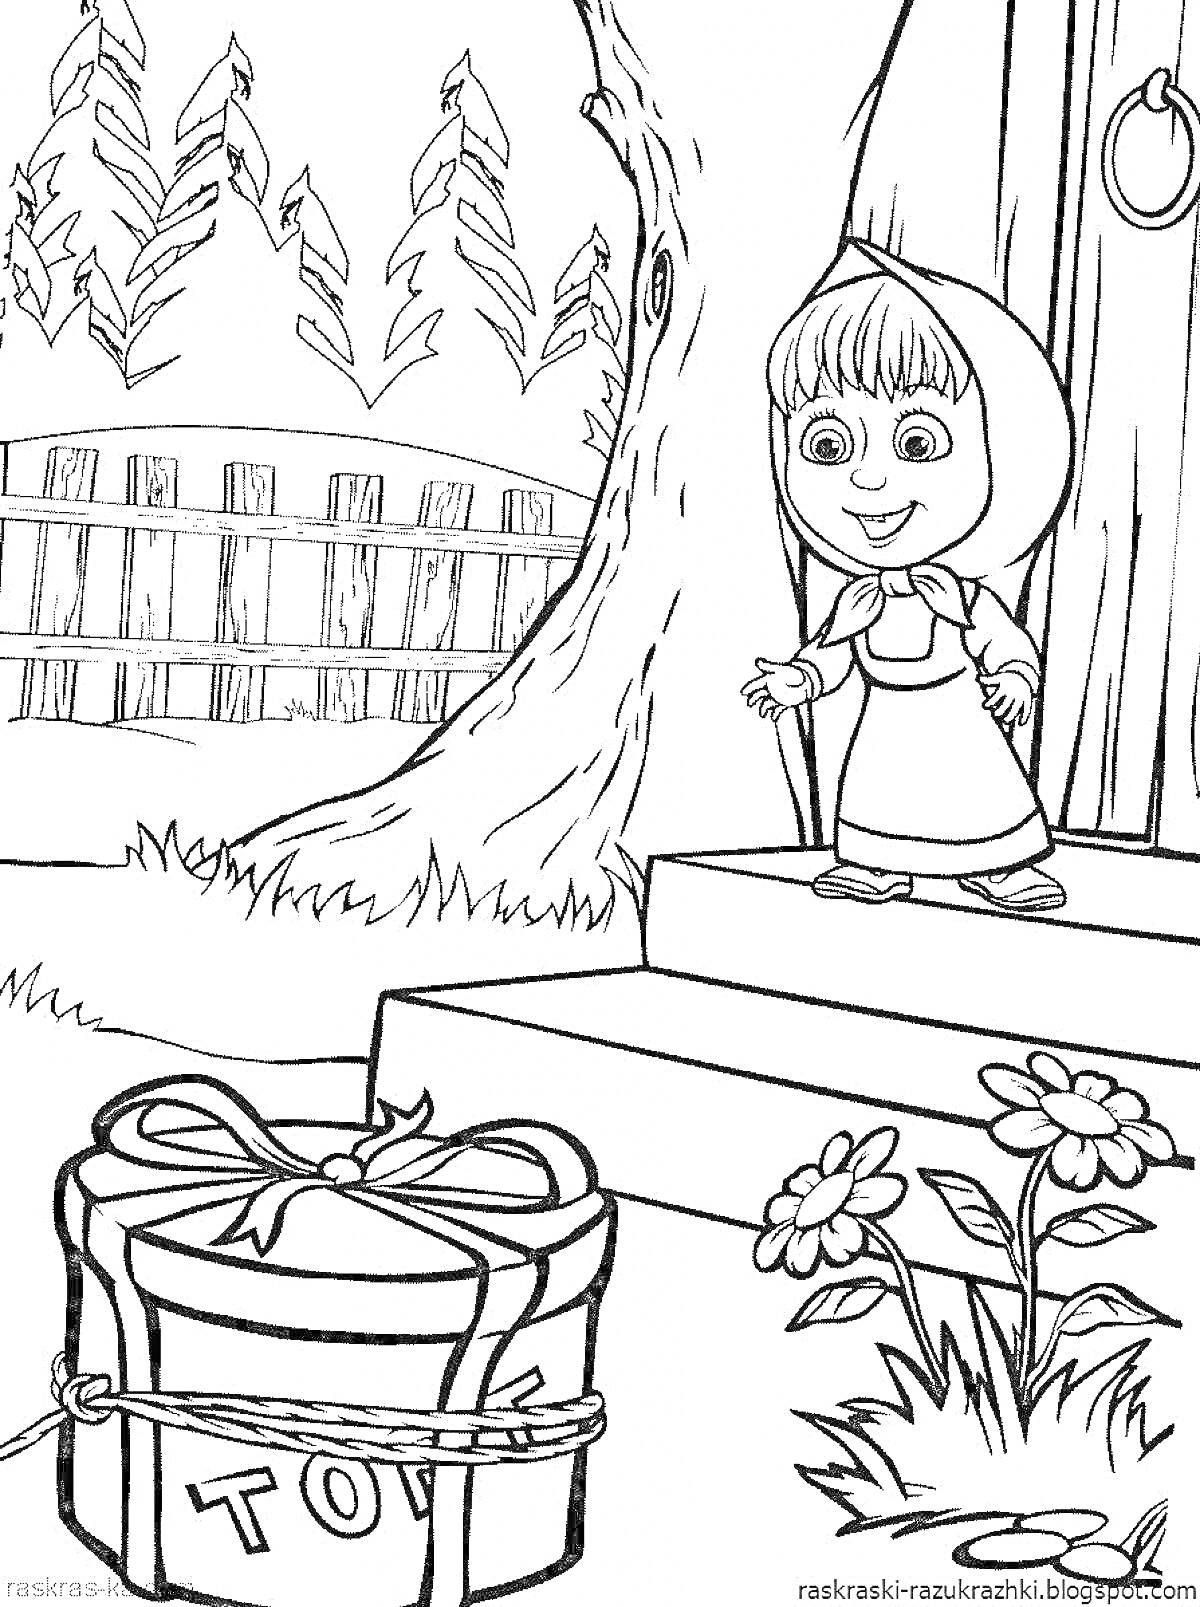 Раскраска Девочка с косынкой на ступеньках дома, коридор с деревьями и забором, подарок с надписью TOY, цветы возле подарка